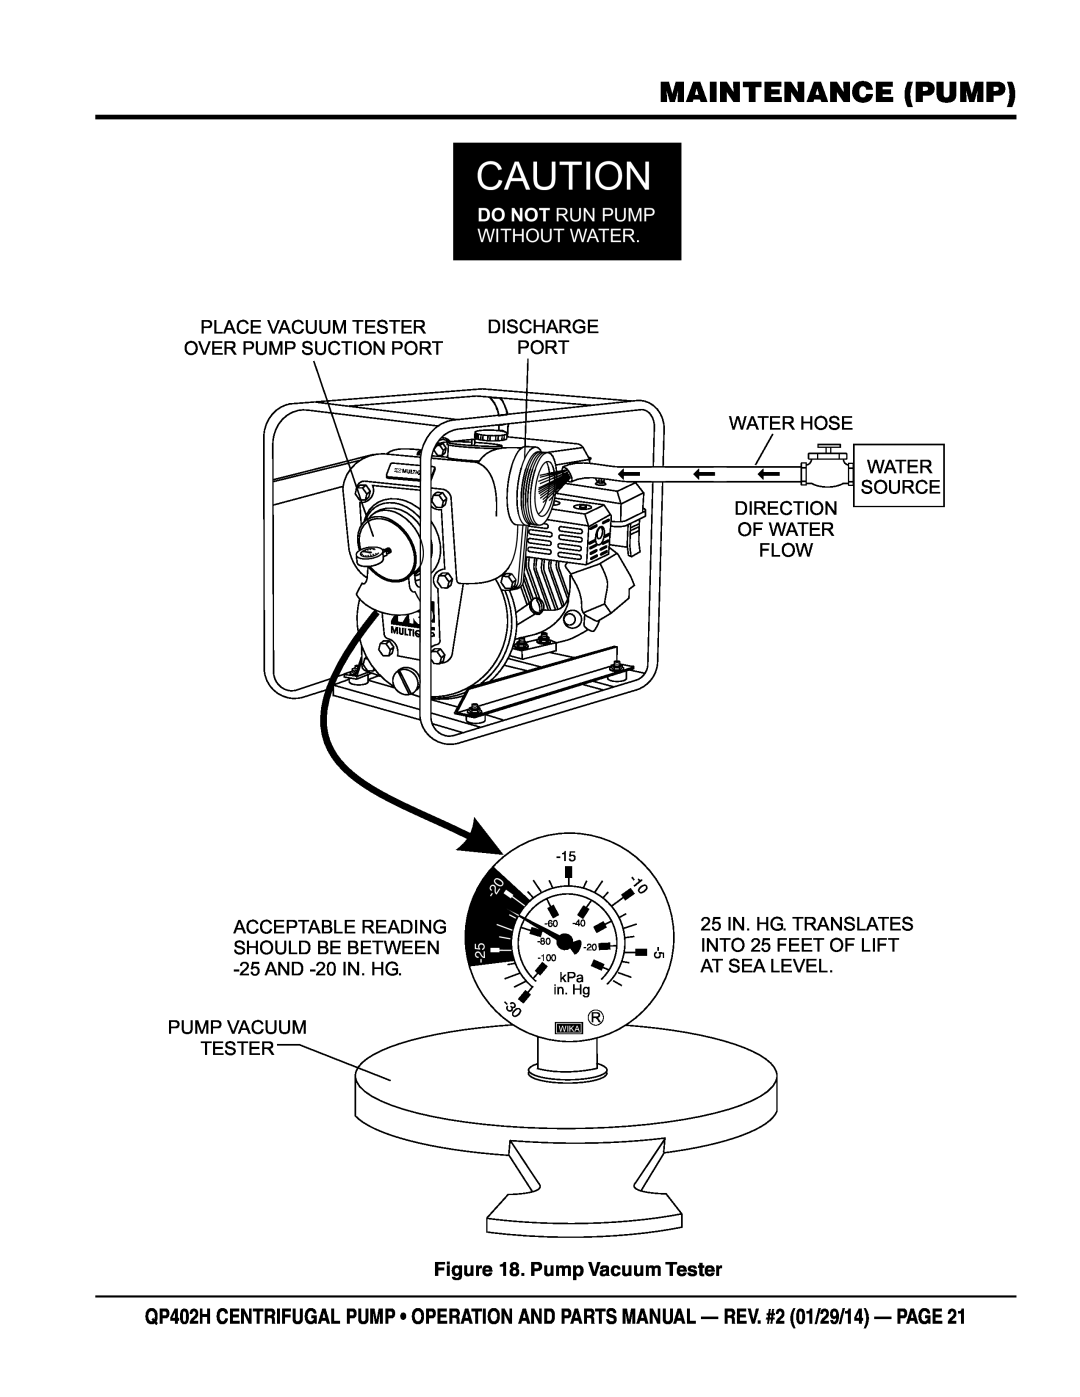 Multiquip qp402h manual Maintenance Pump, Pump Vacuum Tester, Do Not Run Pump Without Water 